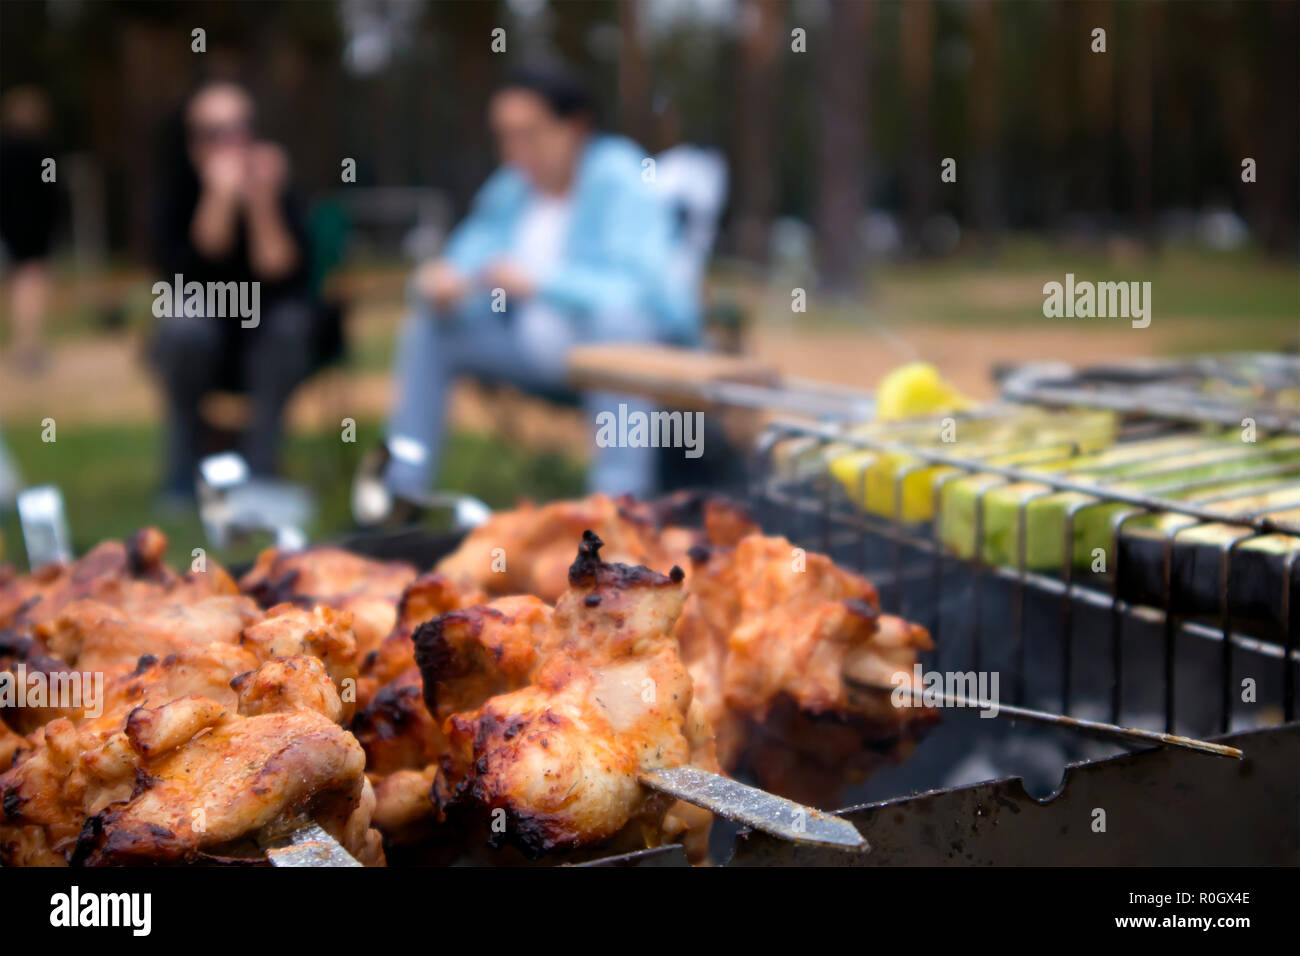 Spiedini con arrosti di carne di pollo sul grill caldo closeup con due sfocate sagome umane in background Foto Stock